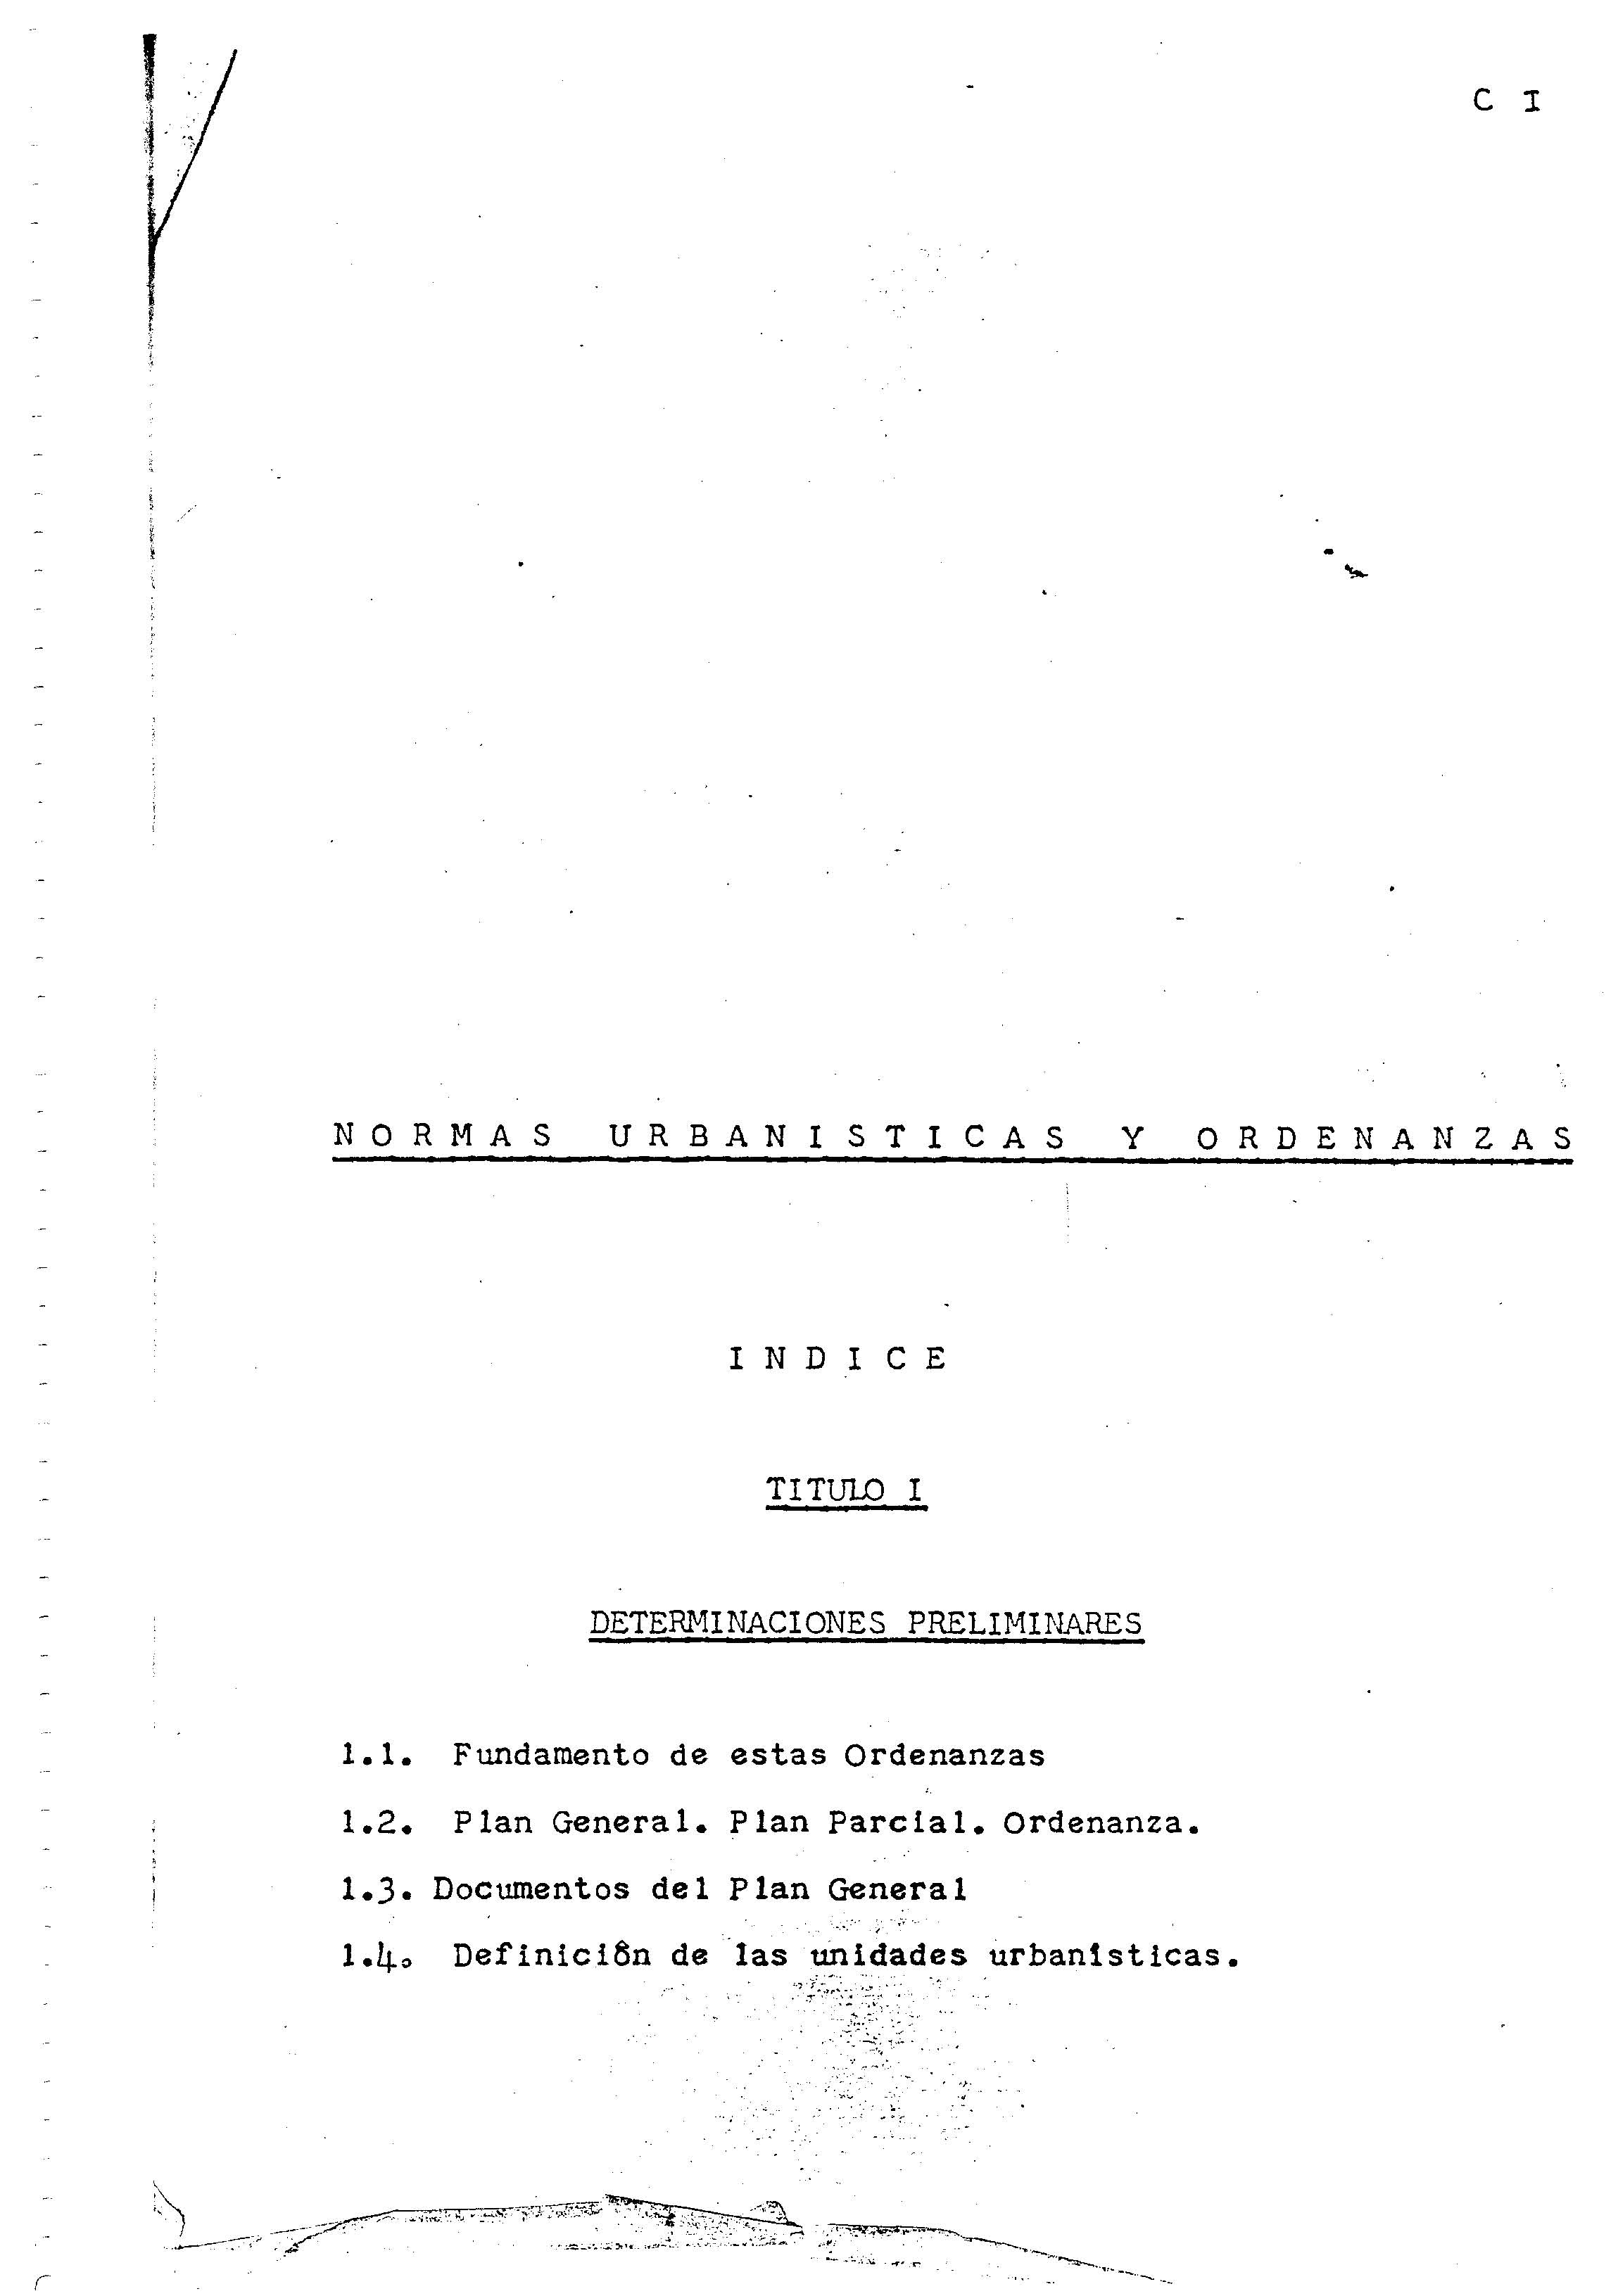 Normas urbanísticas y ordenanzas del Plan General de Arrecife de 1968